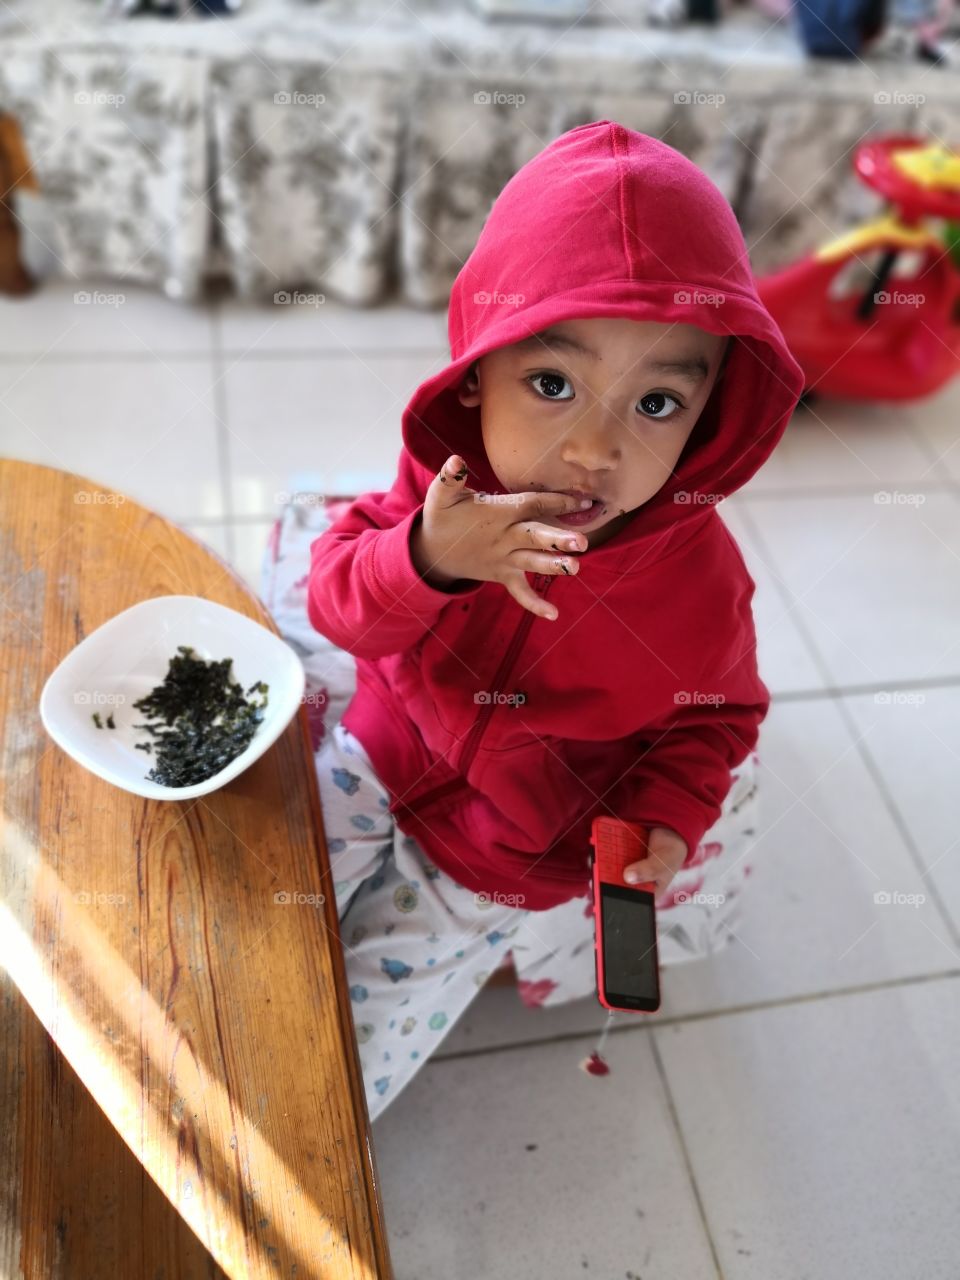 child eating seaweeds